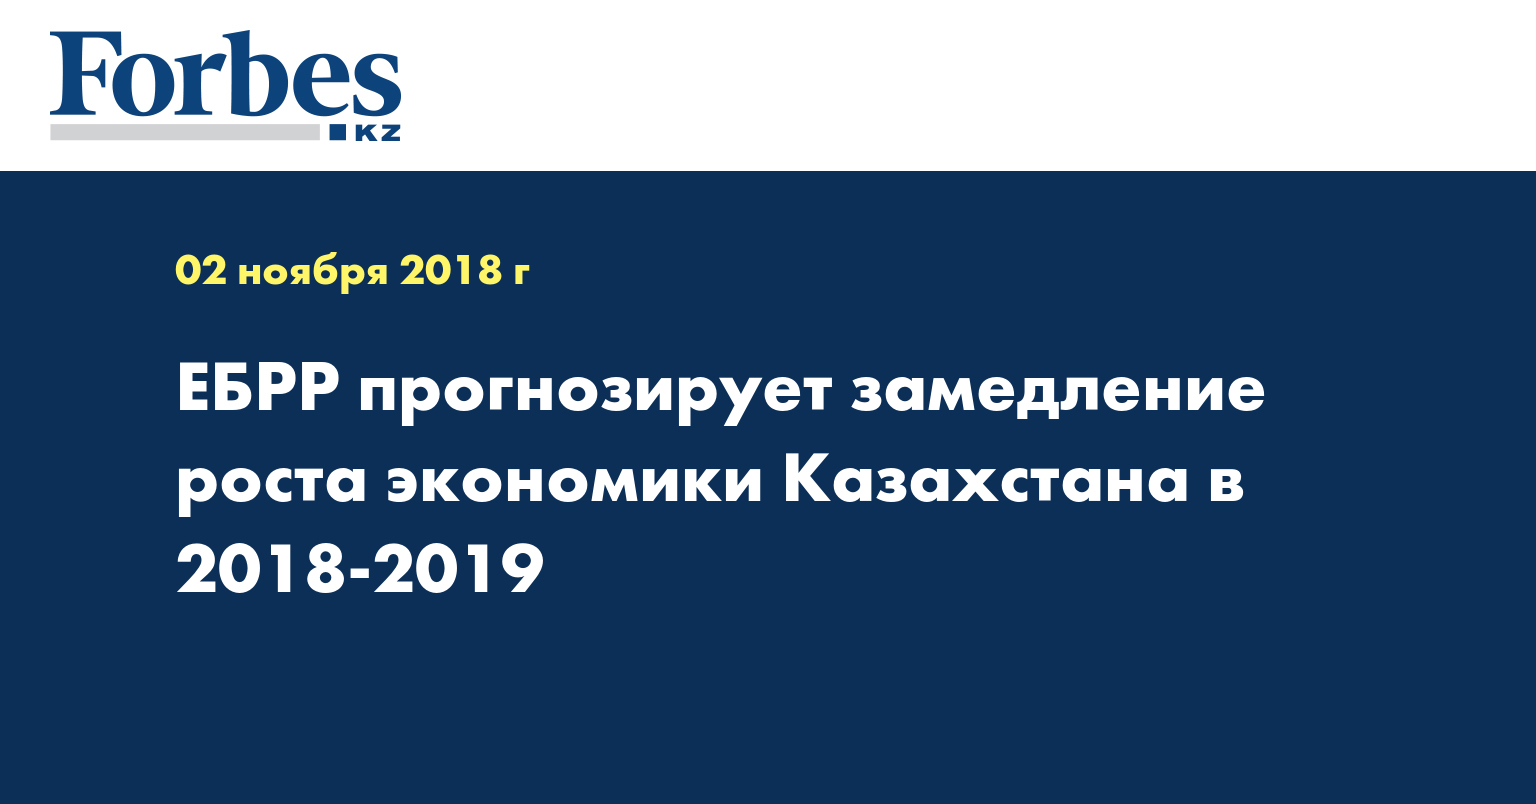 ЕБРР прогнозирует замедление роста экономики Казахстана в 2018-2019 